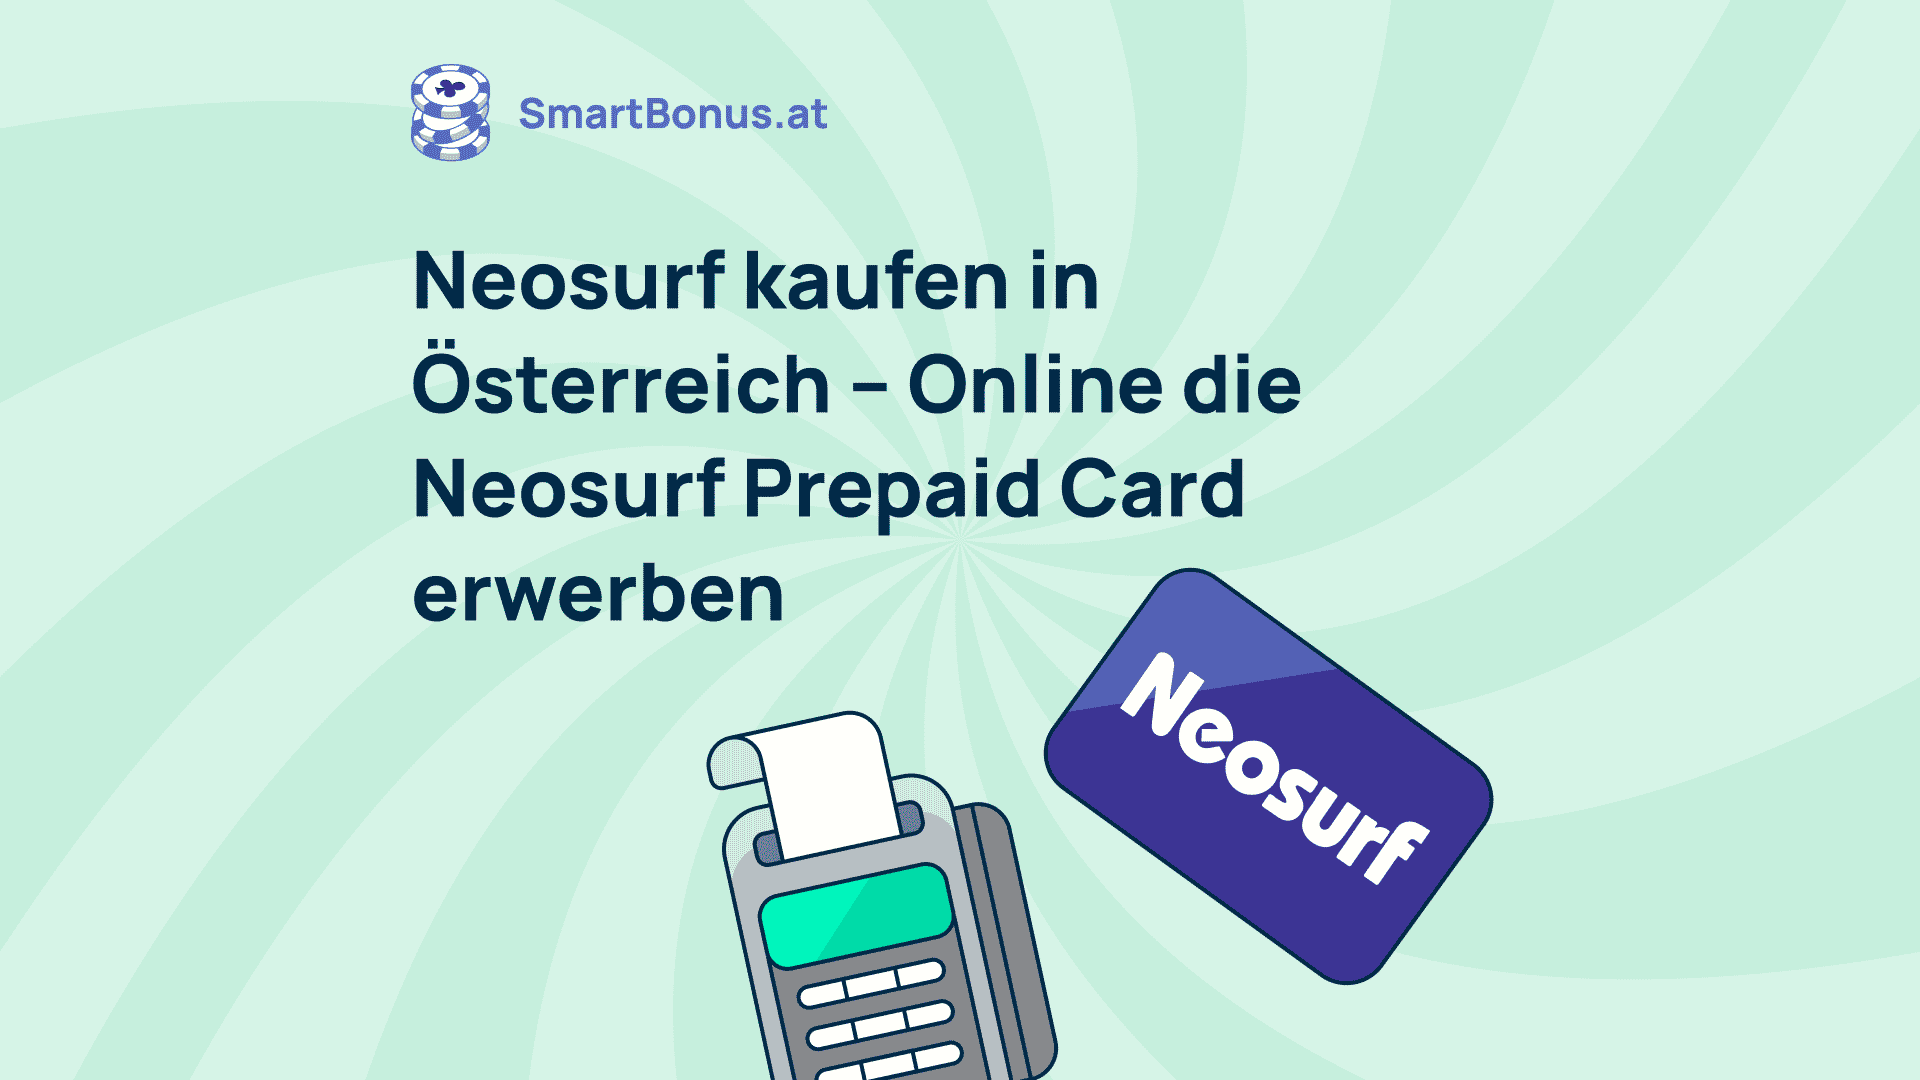 Neosurf prepaid card kaufen